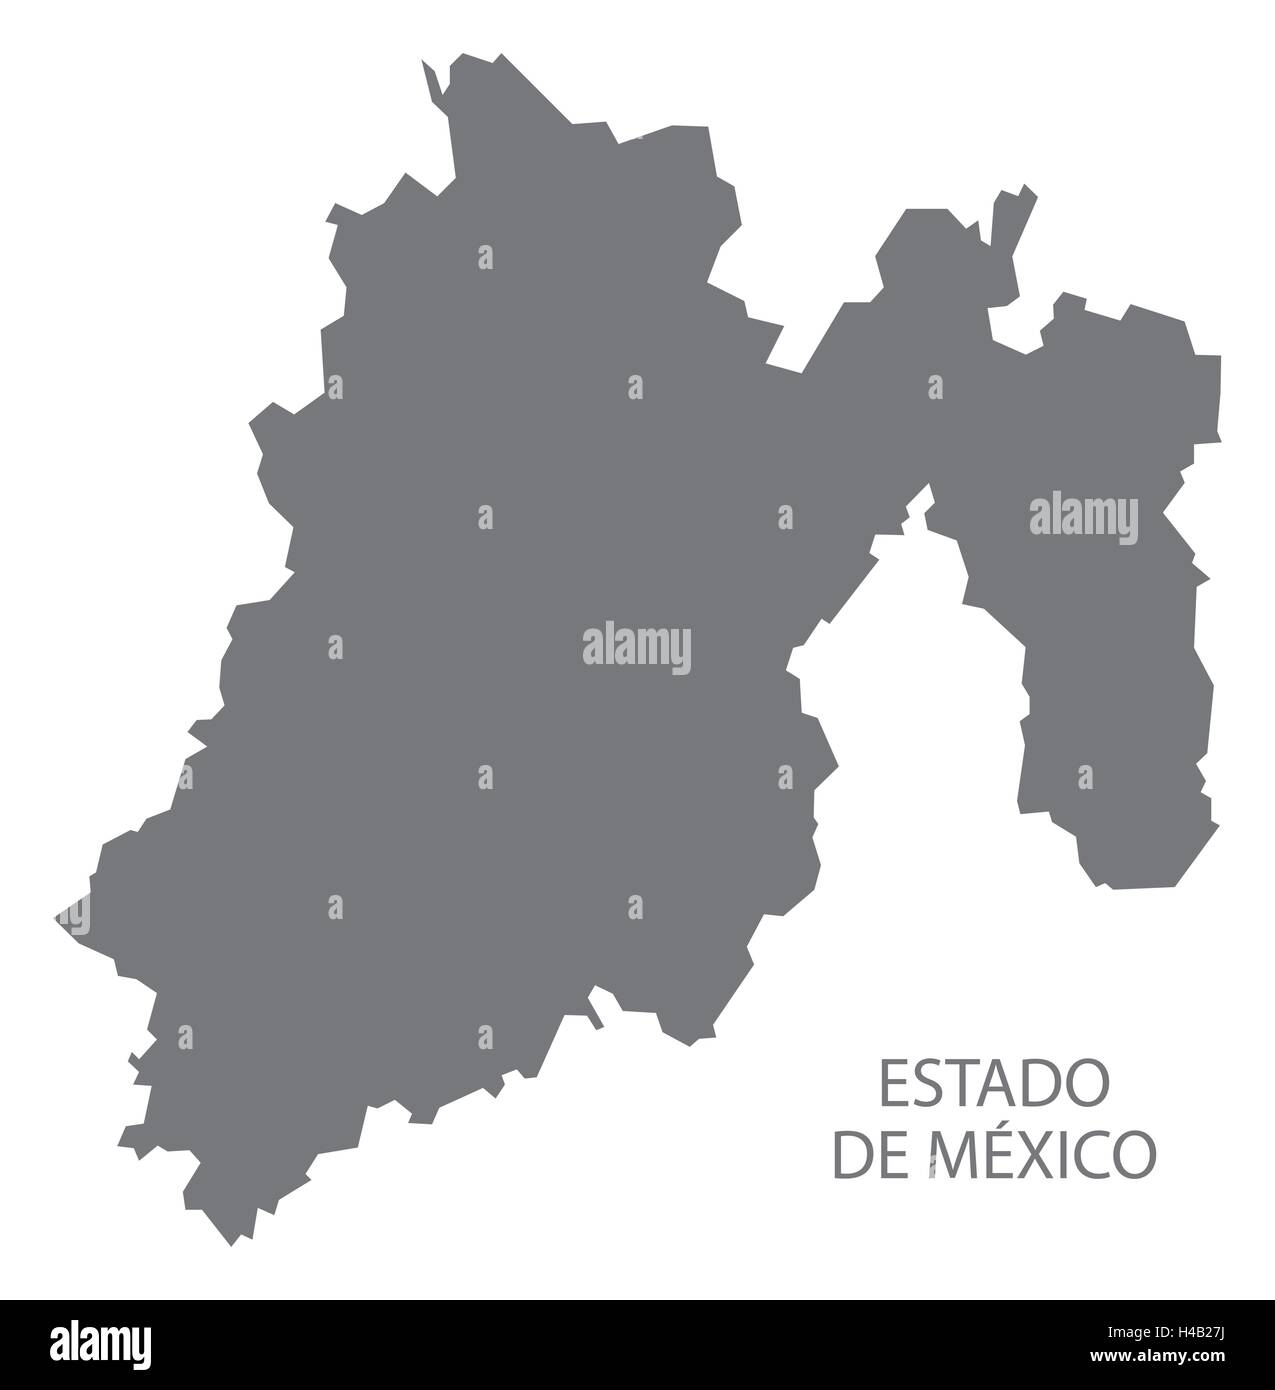 Estado De Mexico Map grey Stock Vector